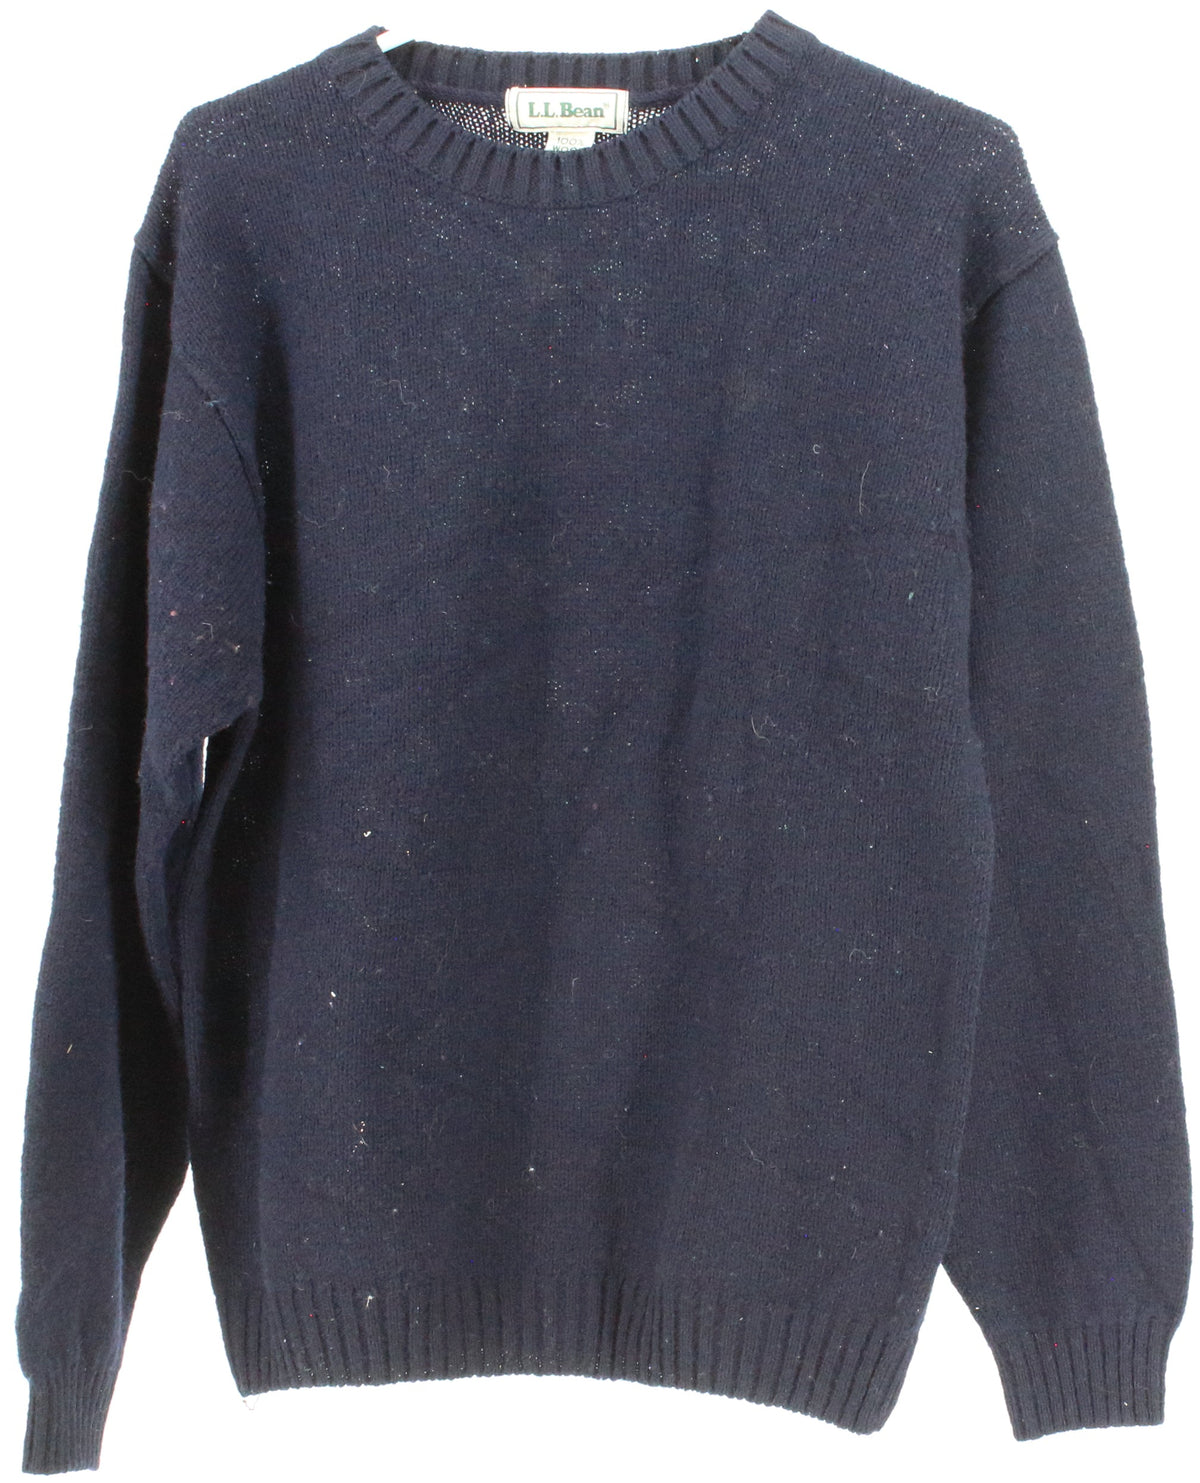 L.L.Bean Navy Blue Plain Men's Sweater